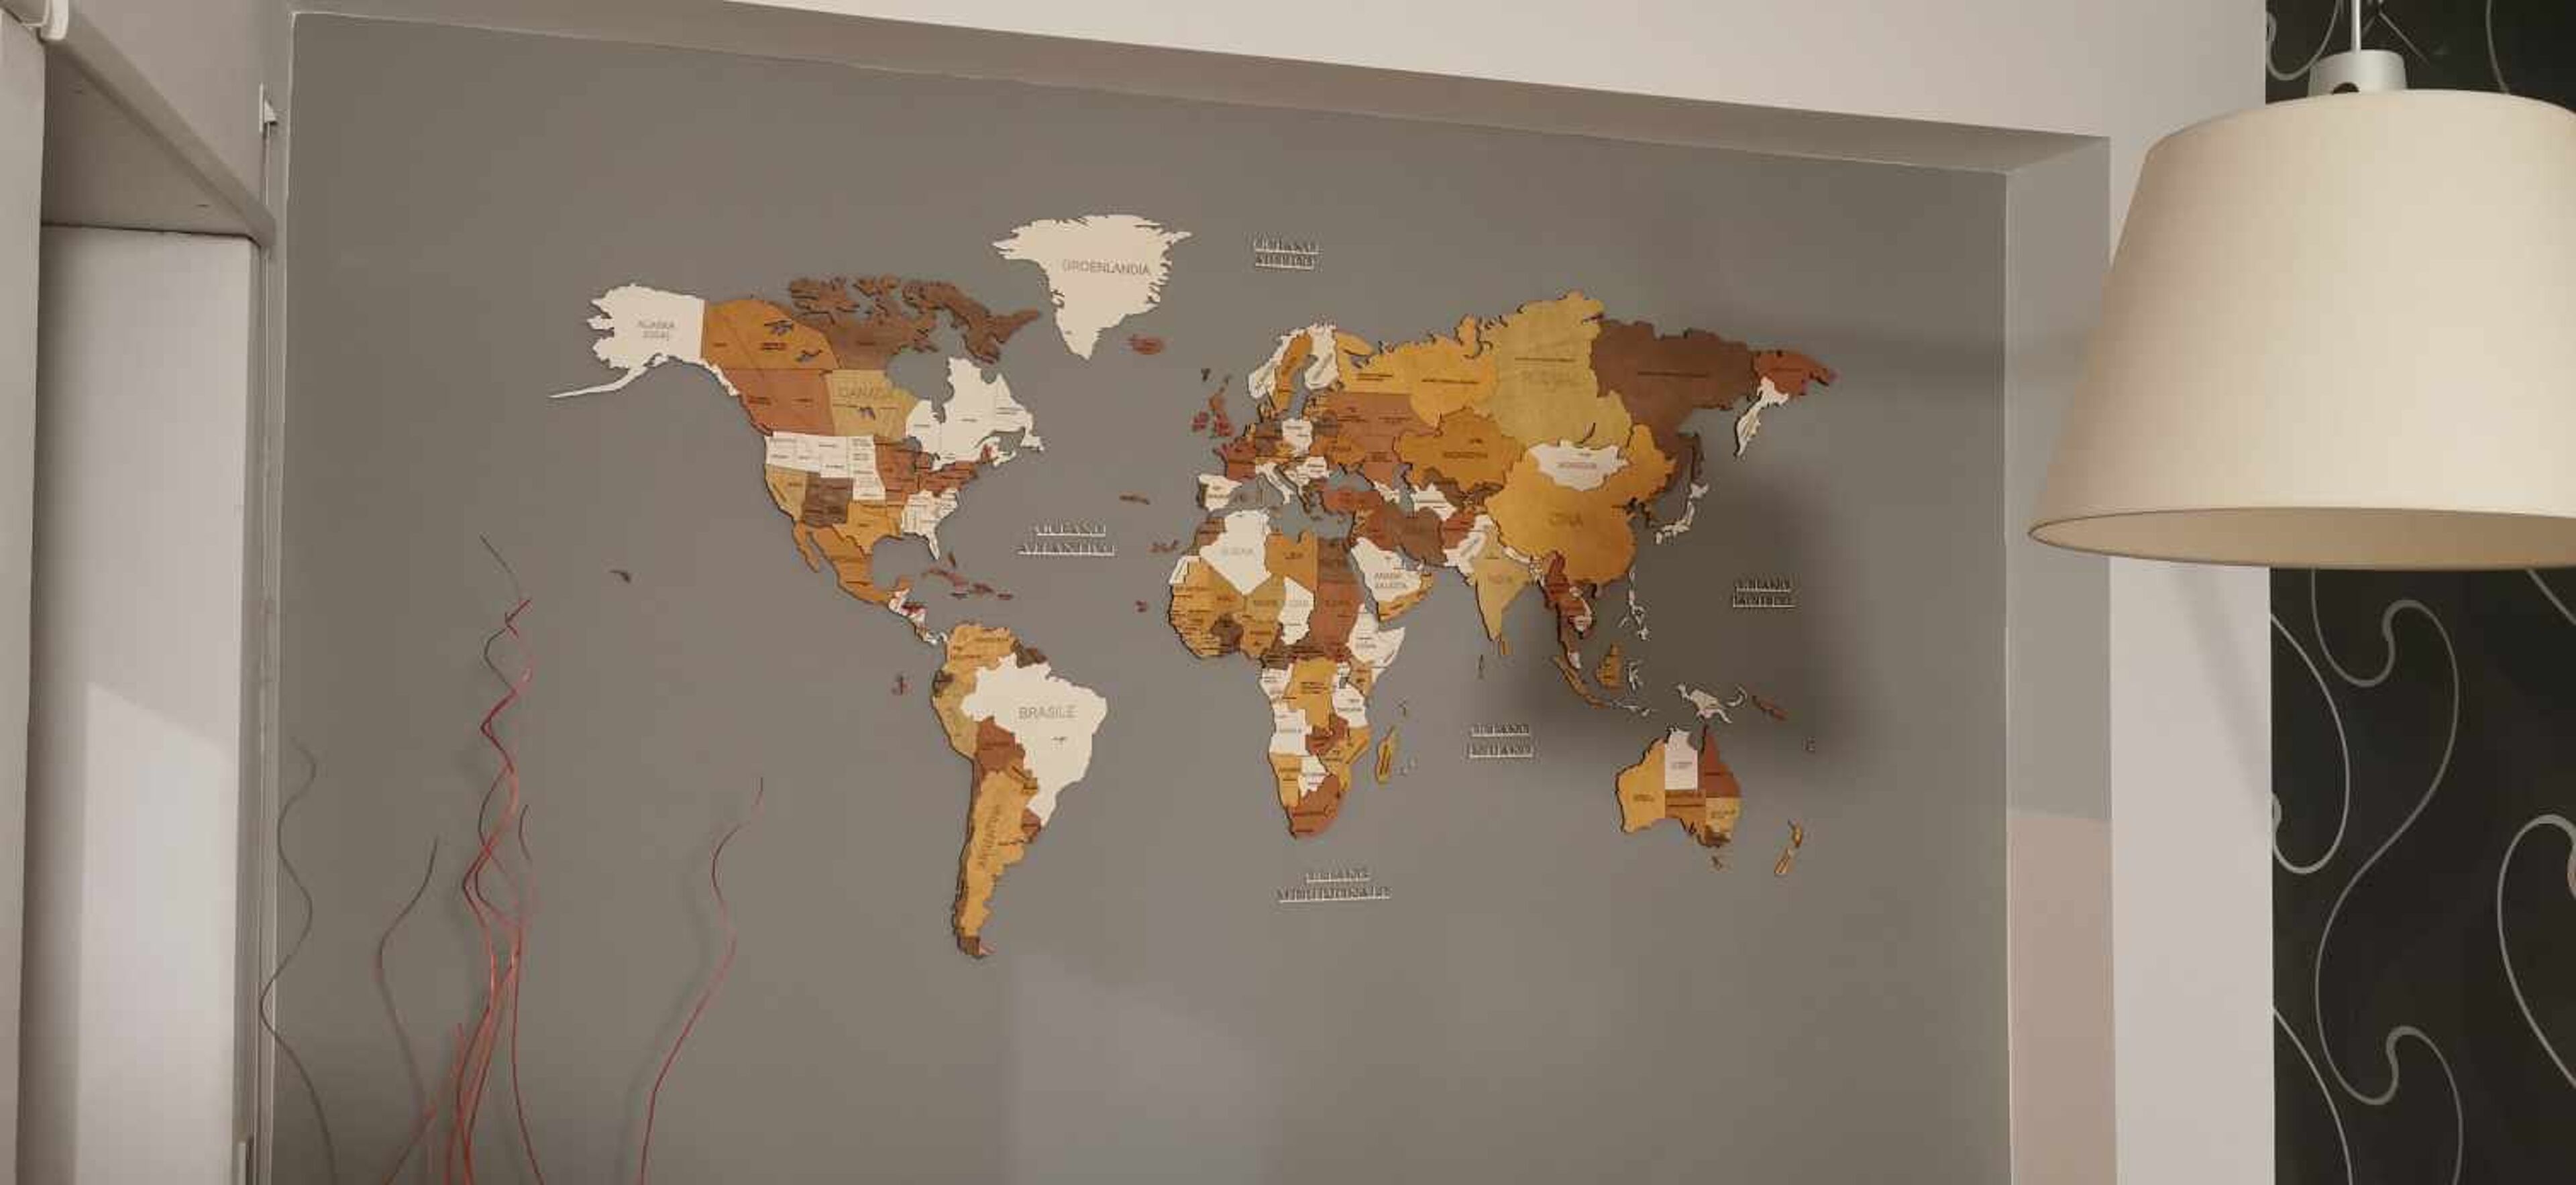 Recenze na Nástěnná dřevěná mapa světa - obrázek od Fabio Bartuccio